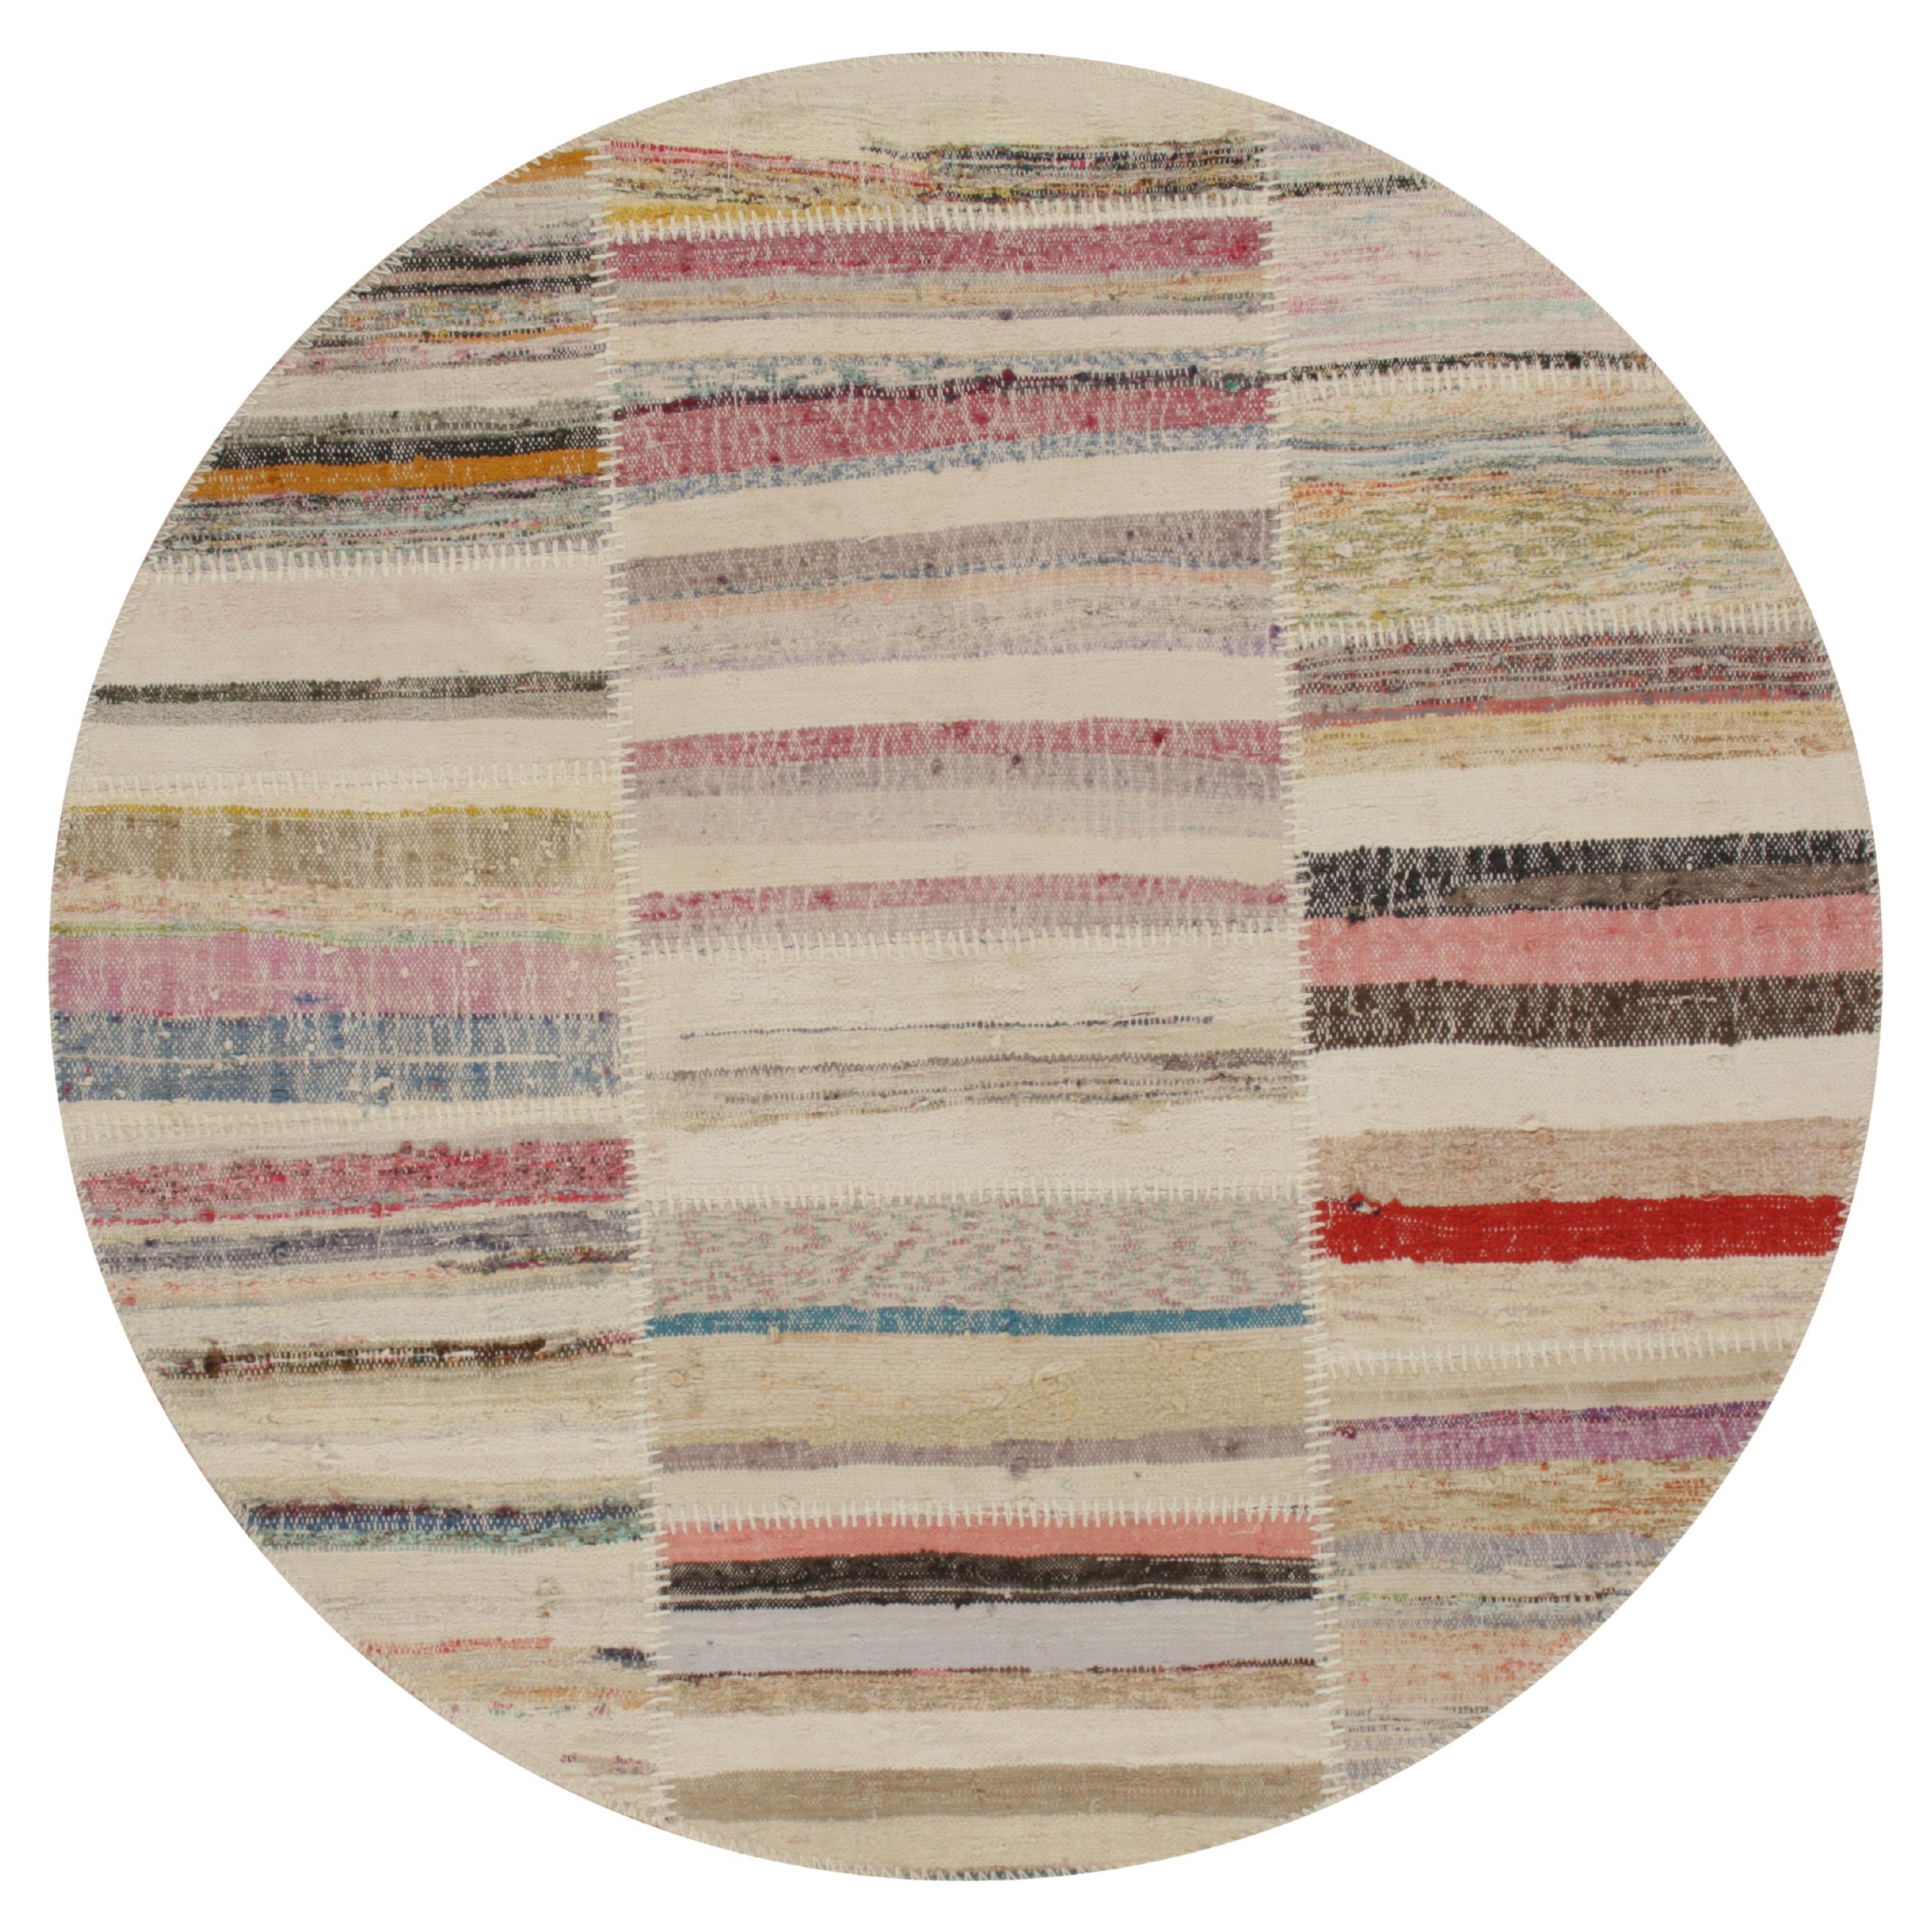 Patchwork-Kilim-Teppich von Rug & Kilim in mehrfarbigen Streifen